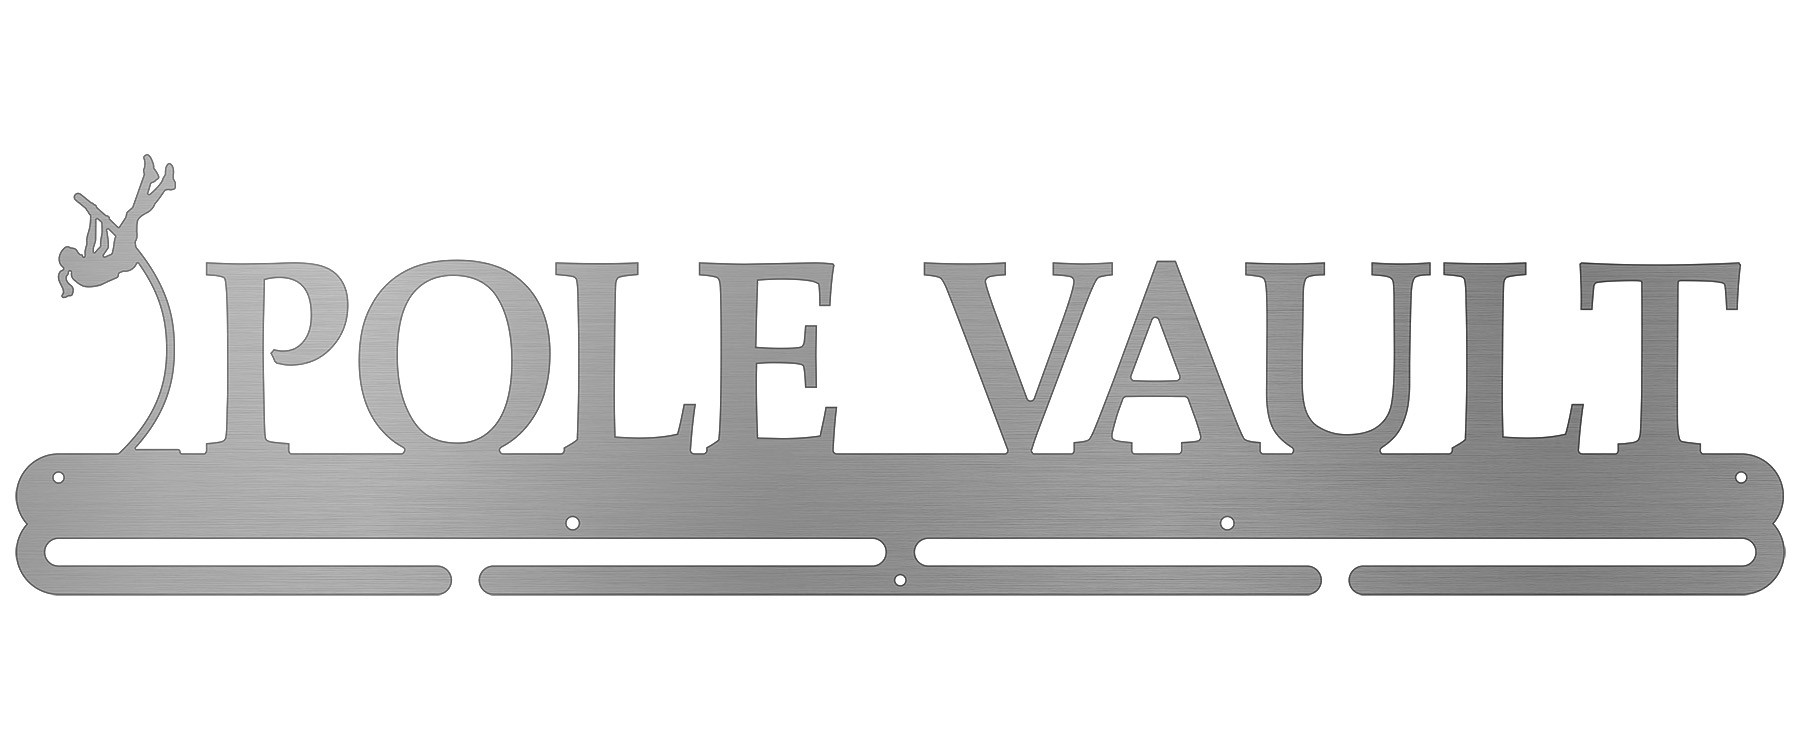 Pole Vault Bib and Medal Display - Female